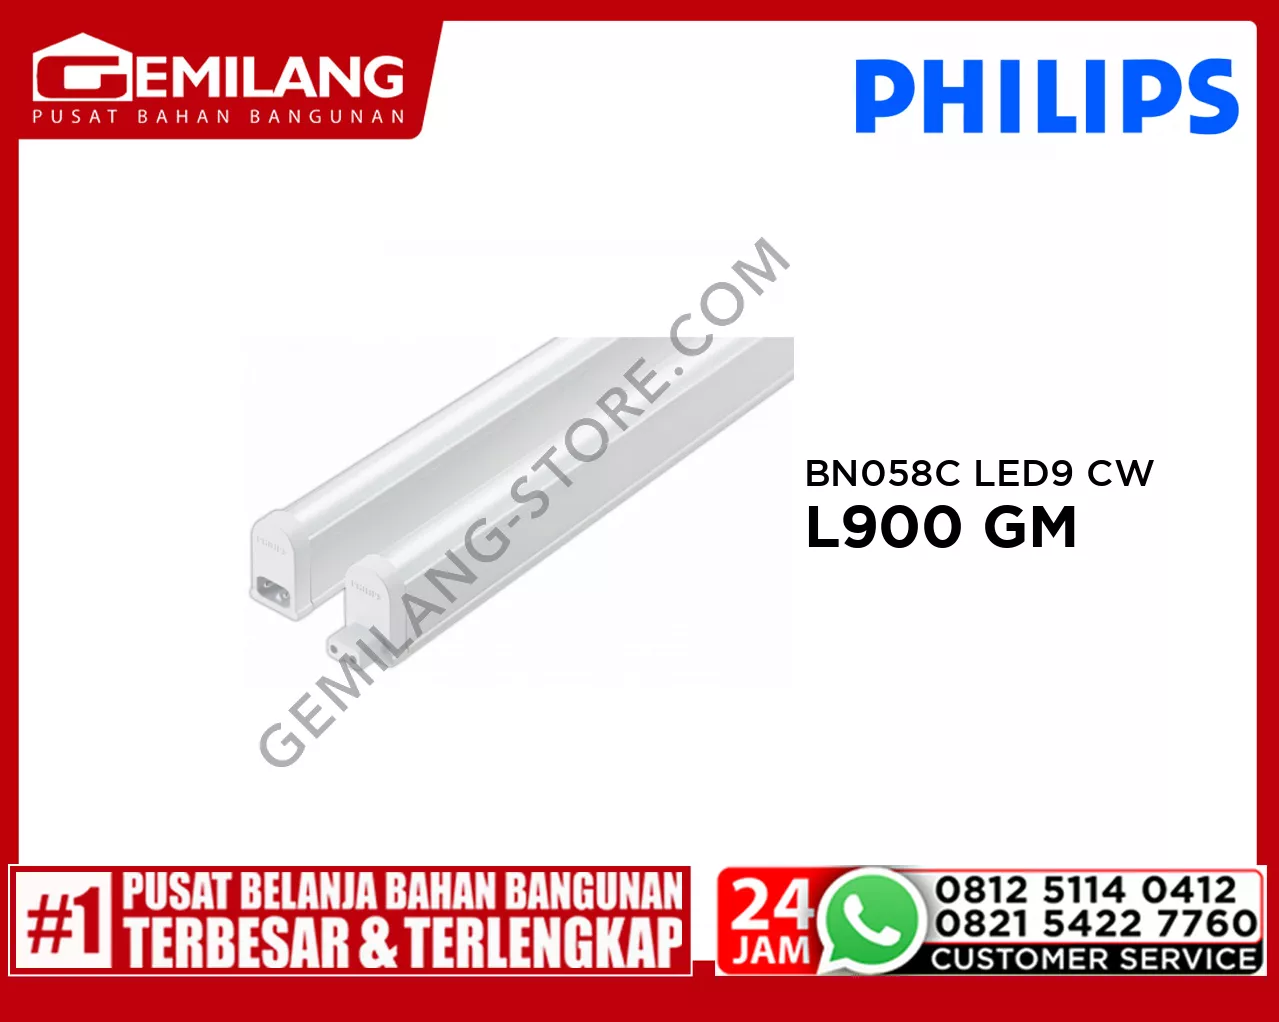 PHILIPS BN058C LED9 CW L900 GM